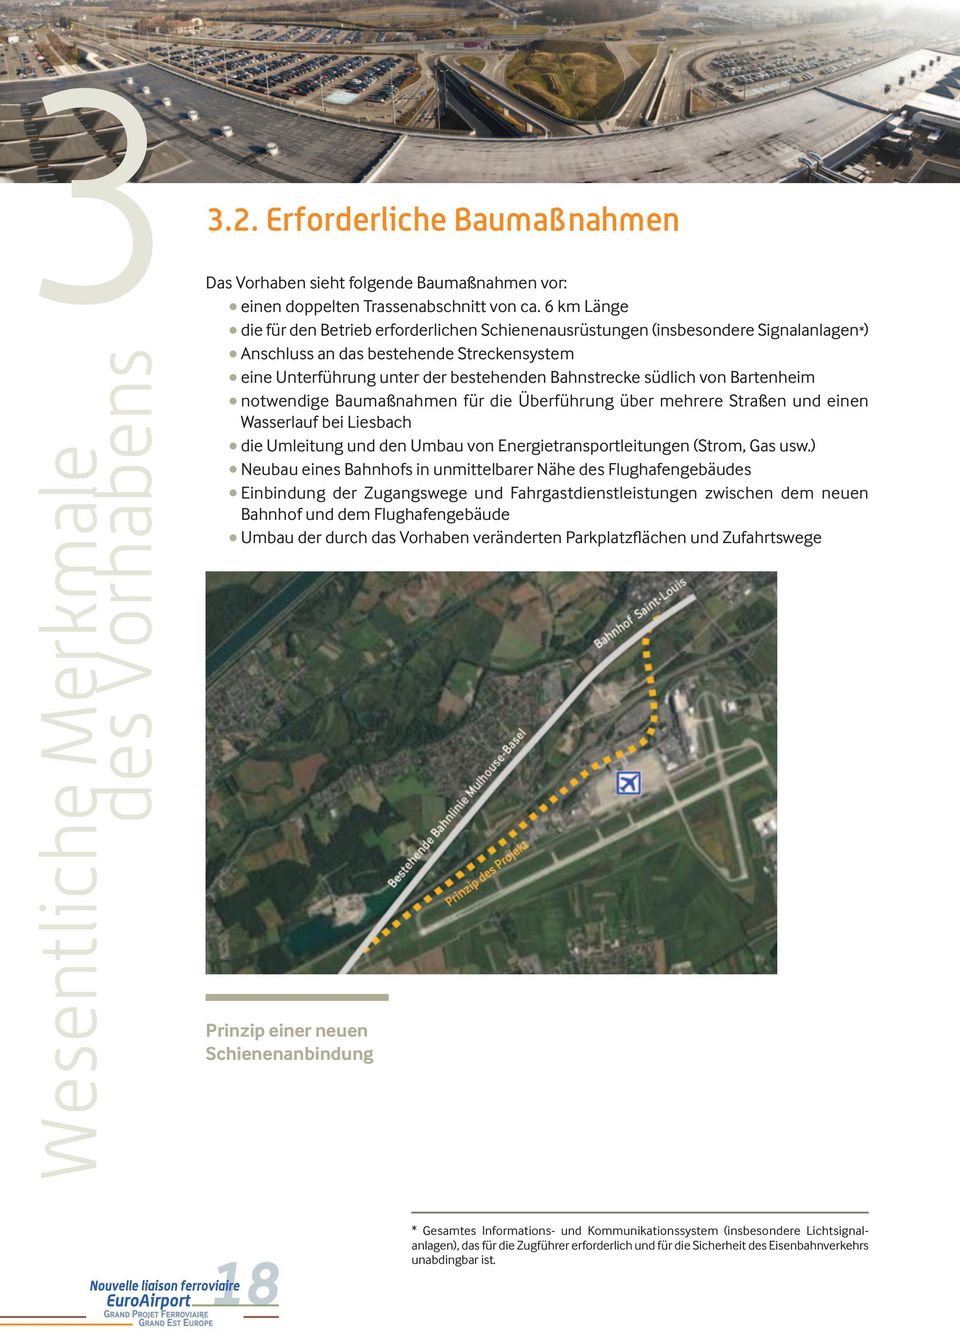 von Bartenheim notwendige Baumaßnahmen für die Überführung über mehrere Straßen und einen Wasserlauf bei Liesbach die Umleitung und den Umbau von Energietransportleitungen (Strom, Gas usw.